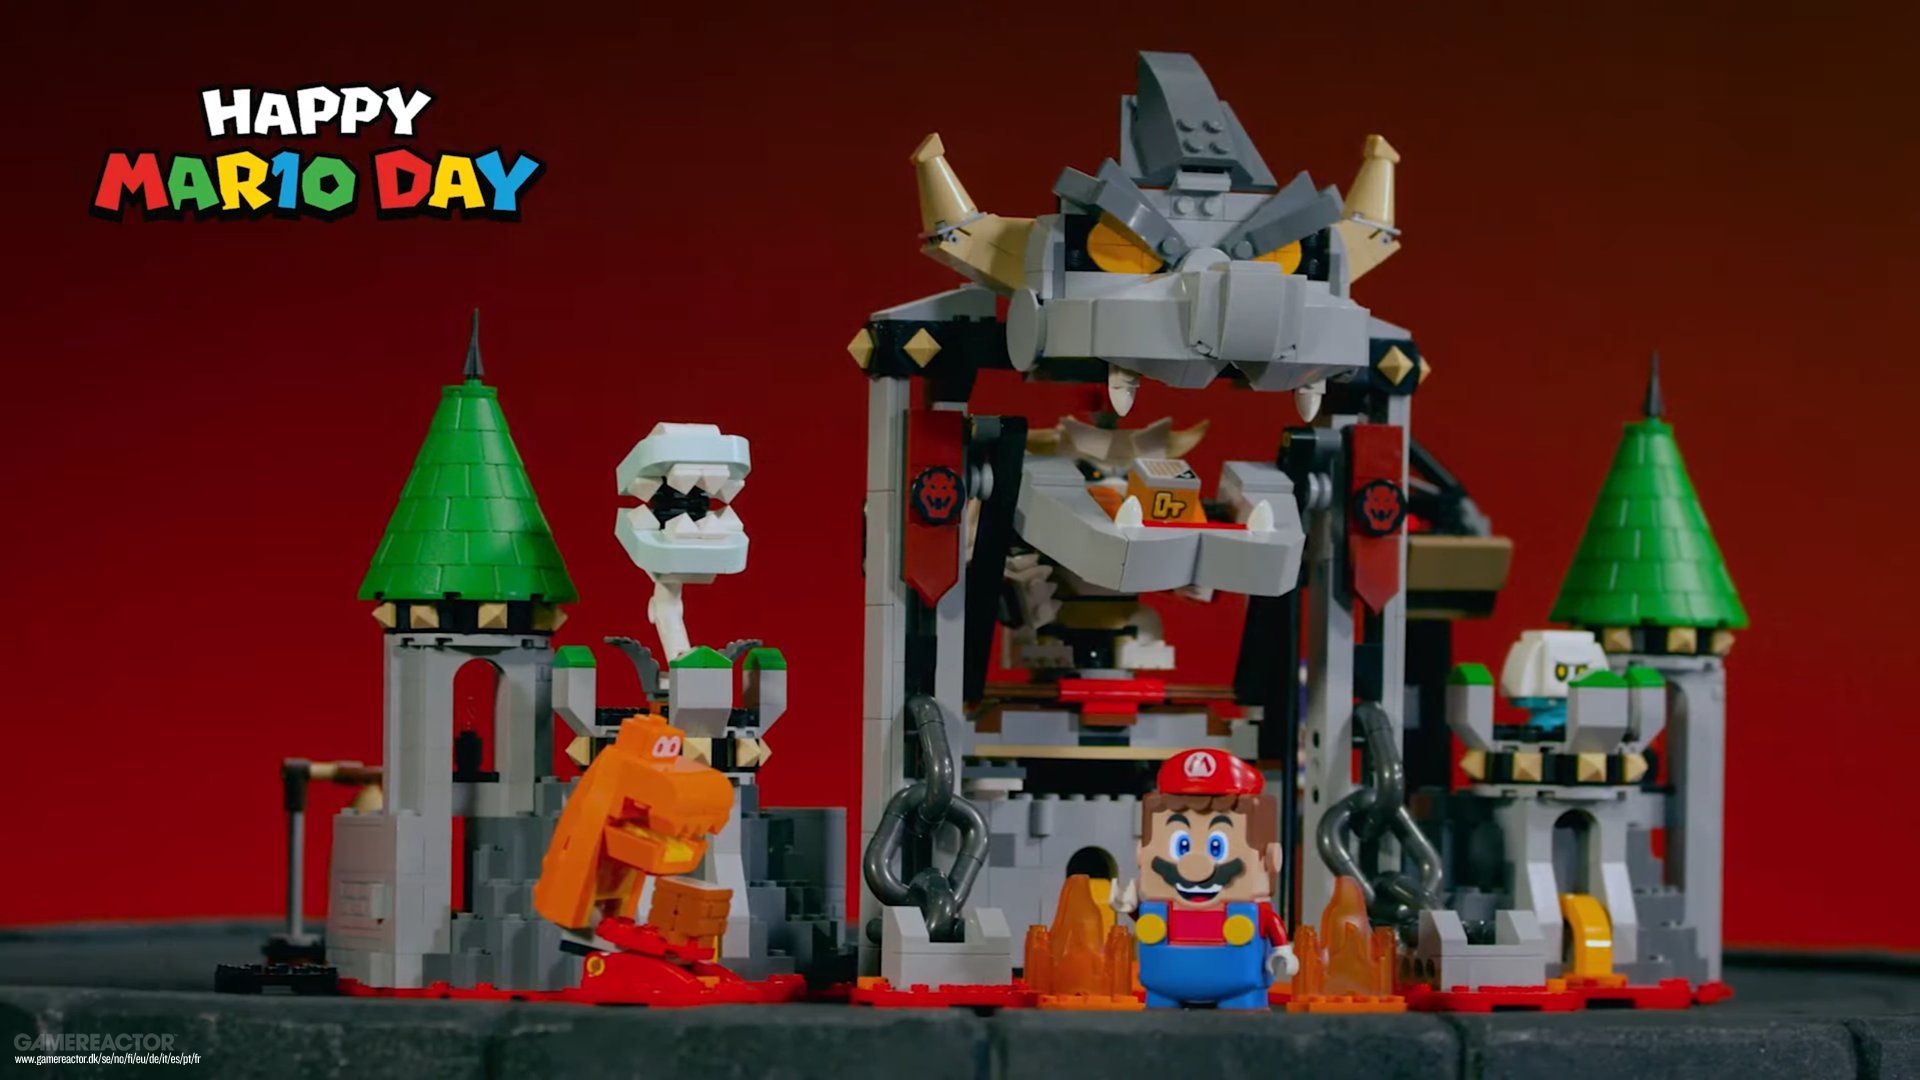 Celebra el Día de Mario con un vistazo a la nueva figura Lego con Donkey Kong